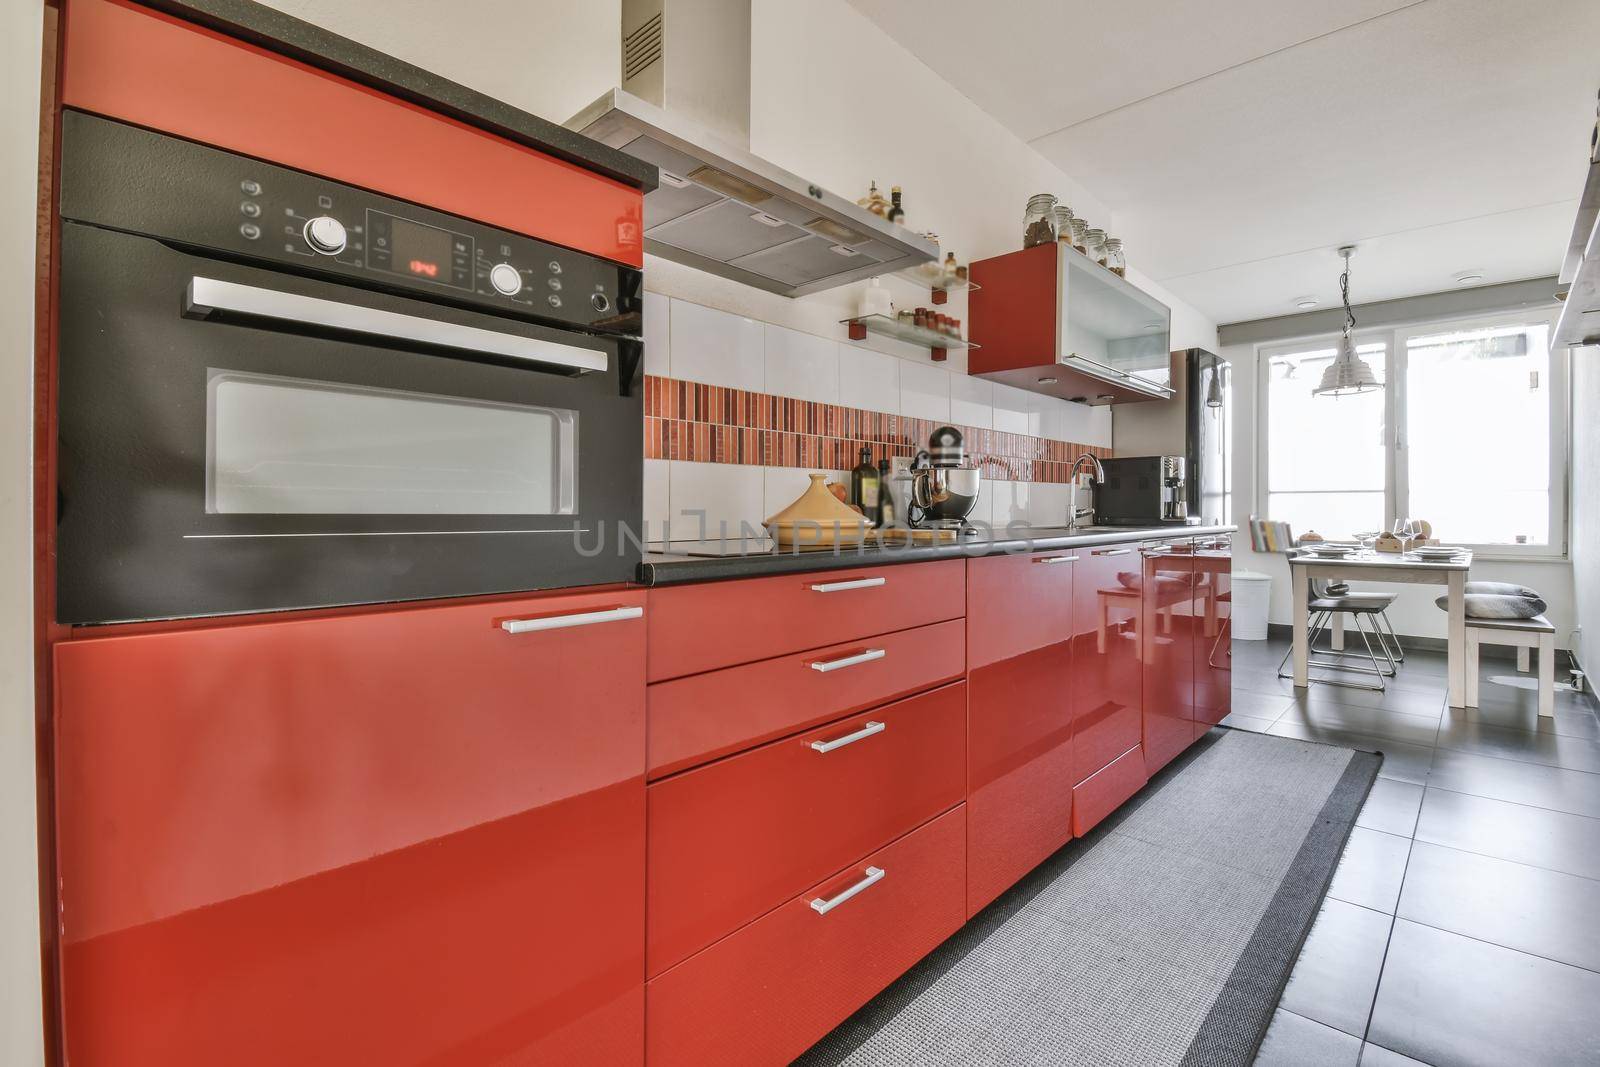 Stylish kitchen set by casamedia